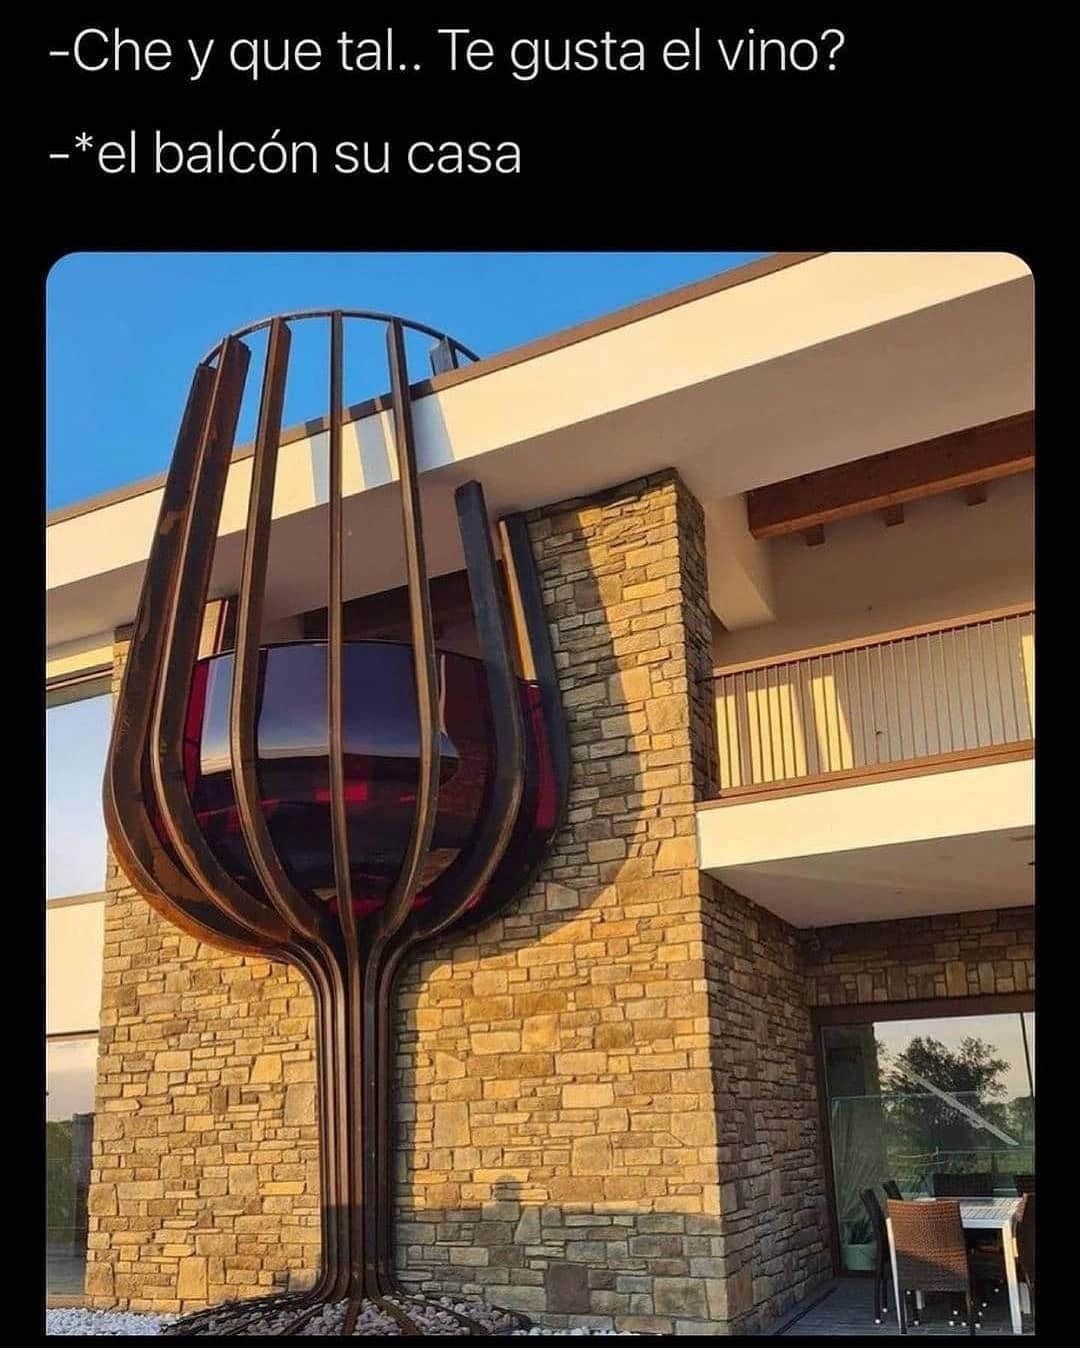 Che y que tal.. Te gusta el vino? El balcón su casa.